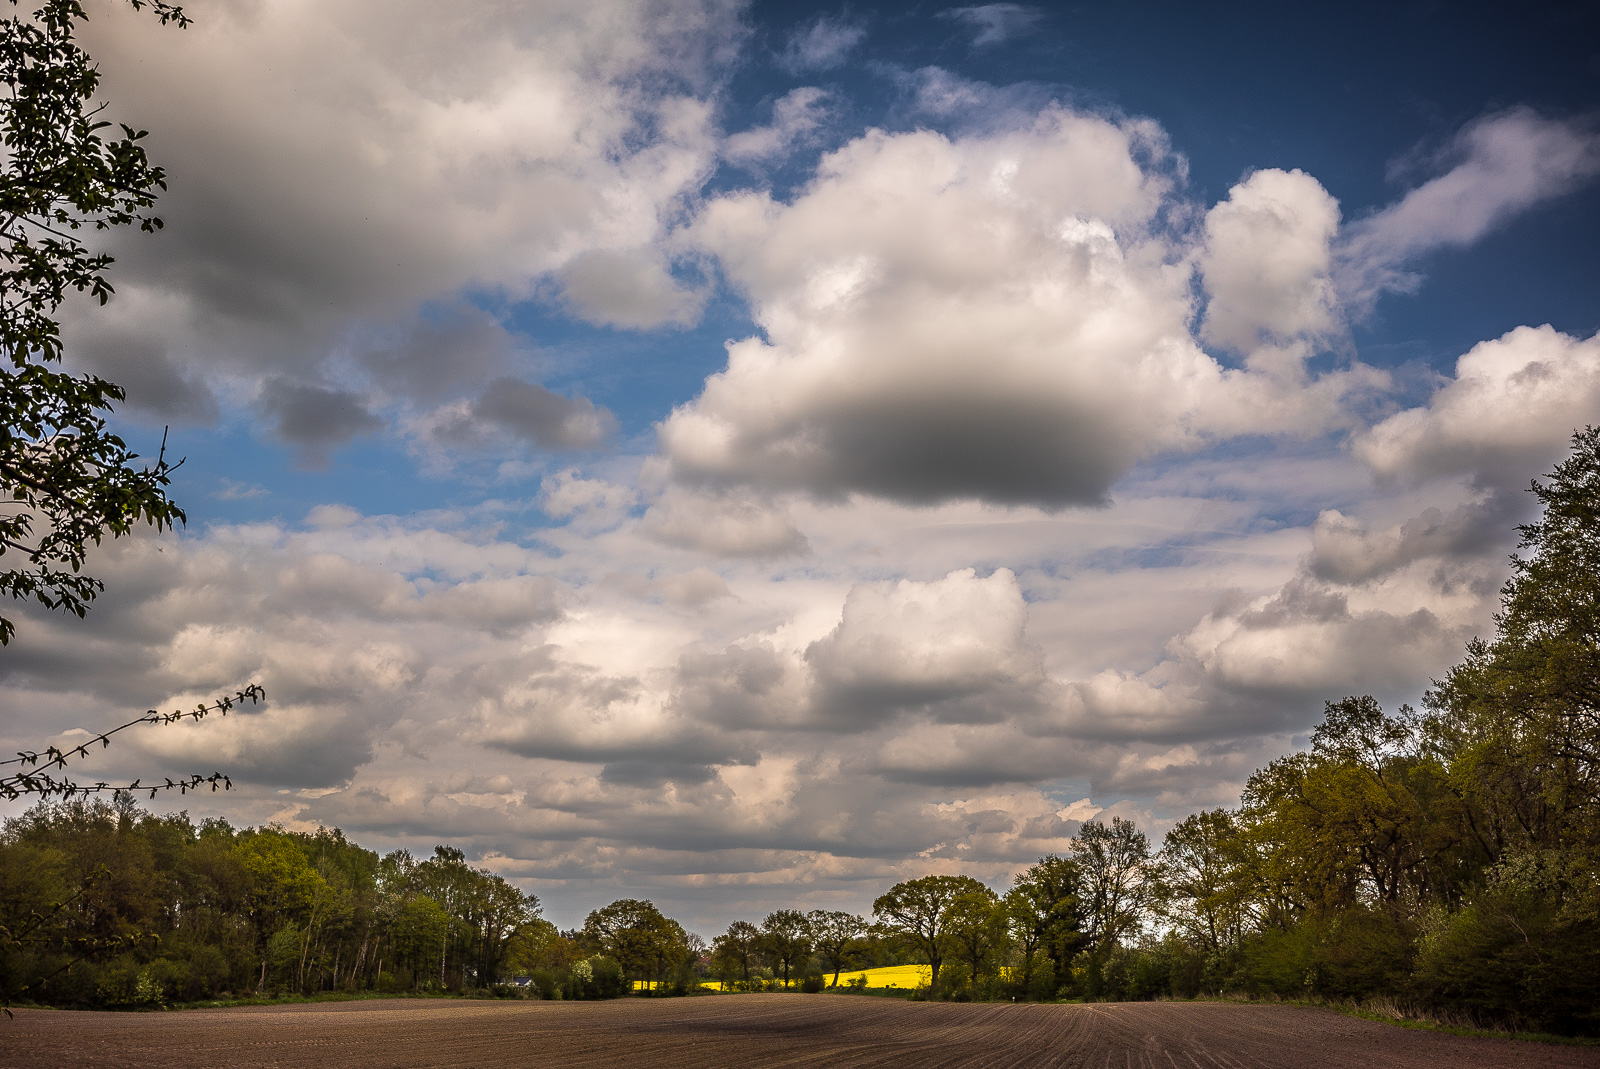 Eine Landschafts-Fotografie mit mehr als 3/4 Himmel und vielen tief hängenden Wolken. Am unteren Bildrand ein brach liegender bräunlicher Acker, links und rechts wird das Bild von Bäumen gefasst. Zwischen Acker und Himmel, hinter einer Baumreihe kaum zu sehen, ein Streifen Gelb, offensichtlich ein Rapsfeld.